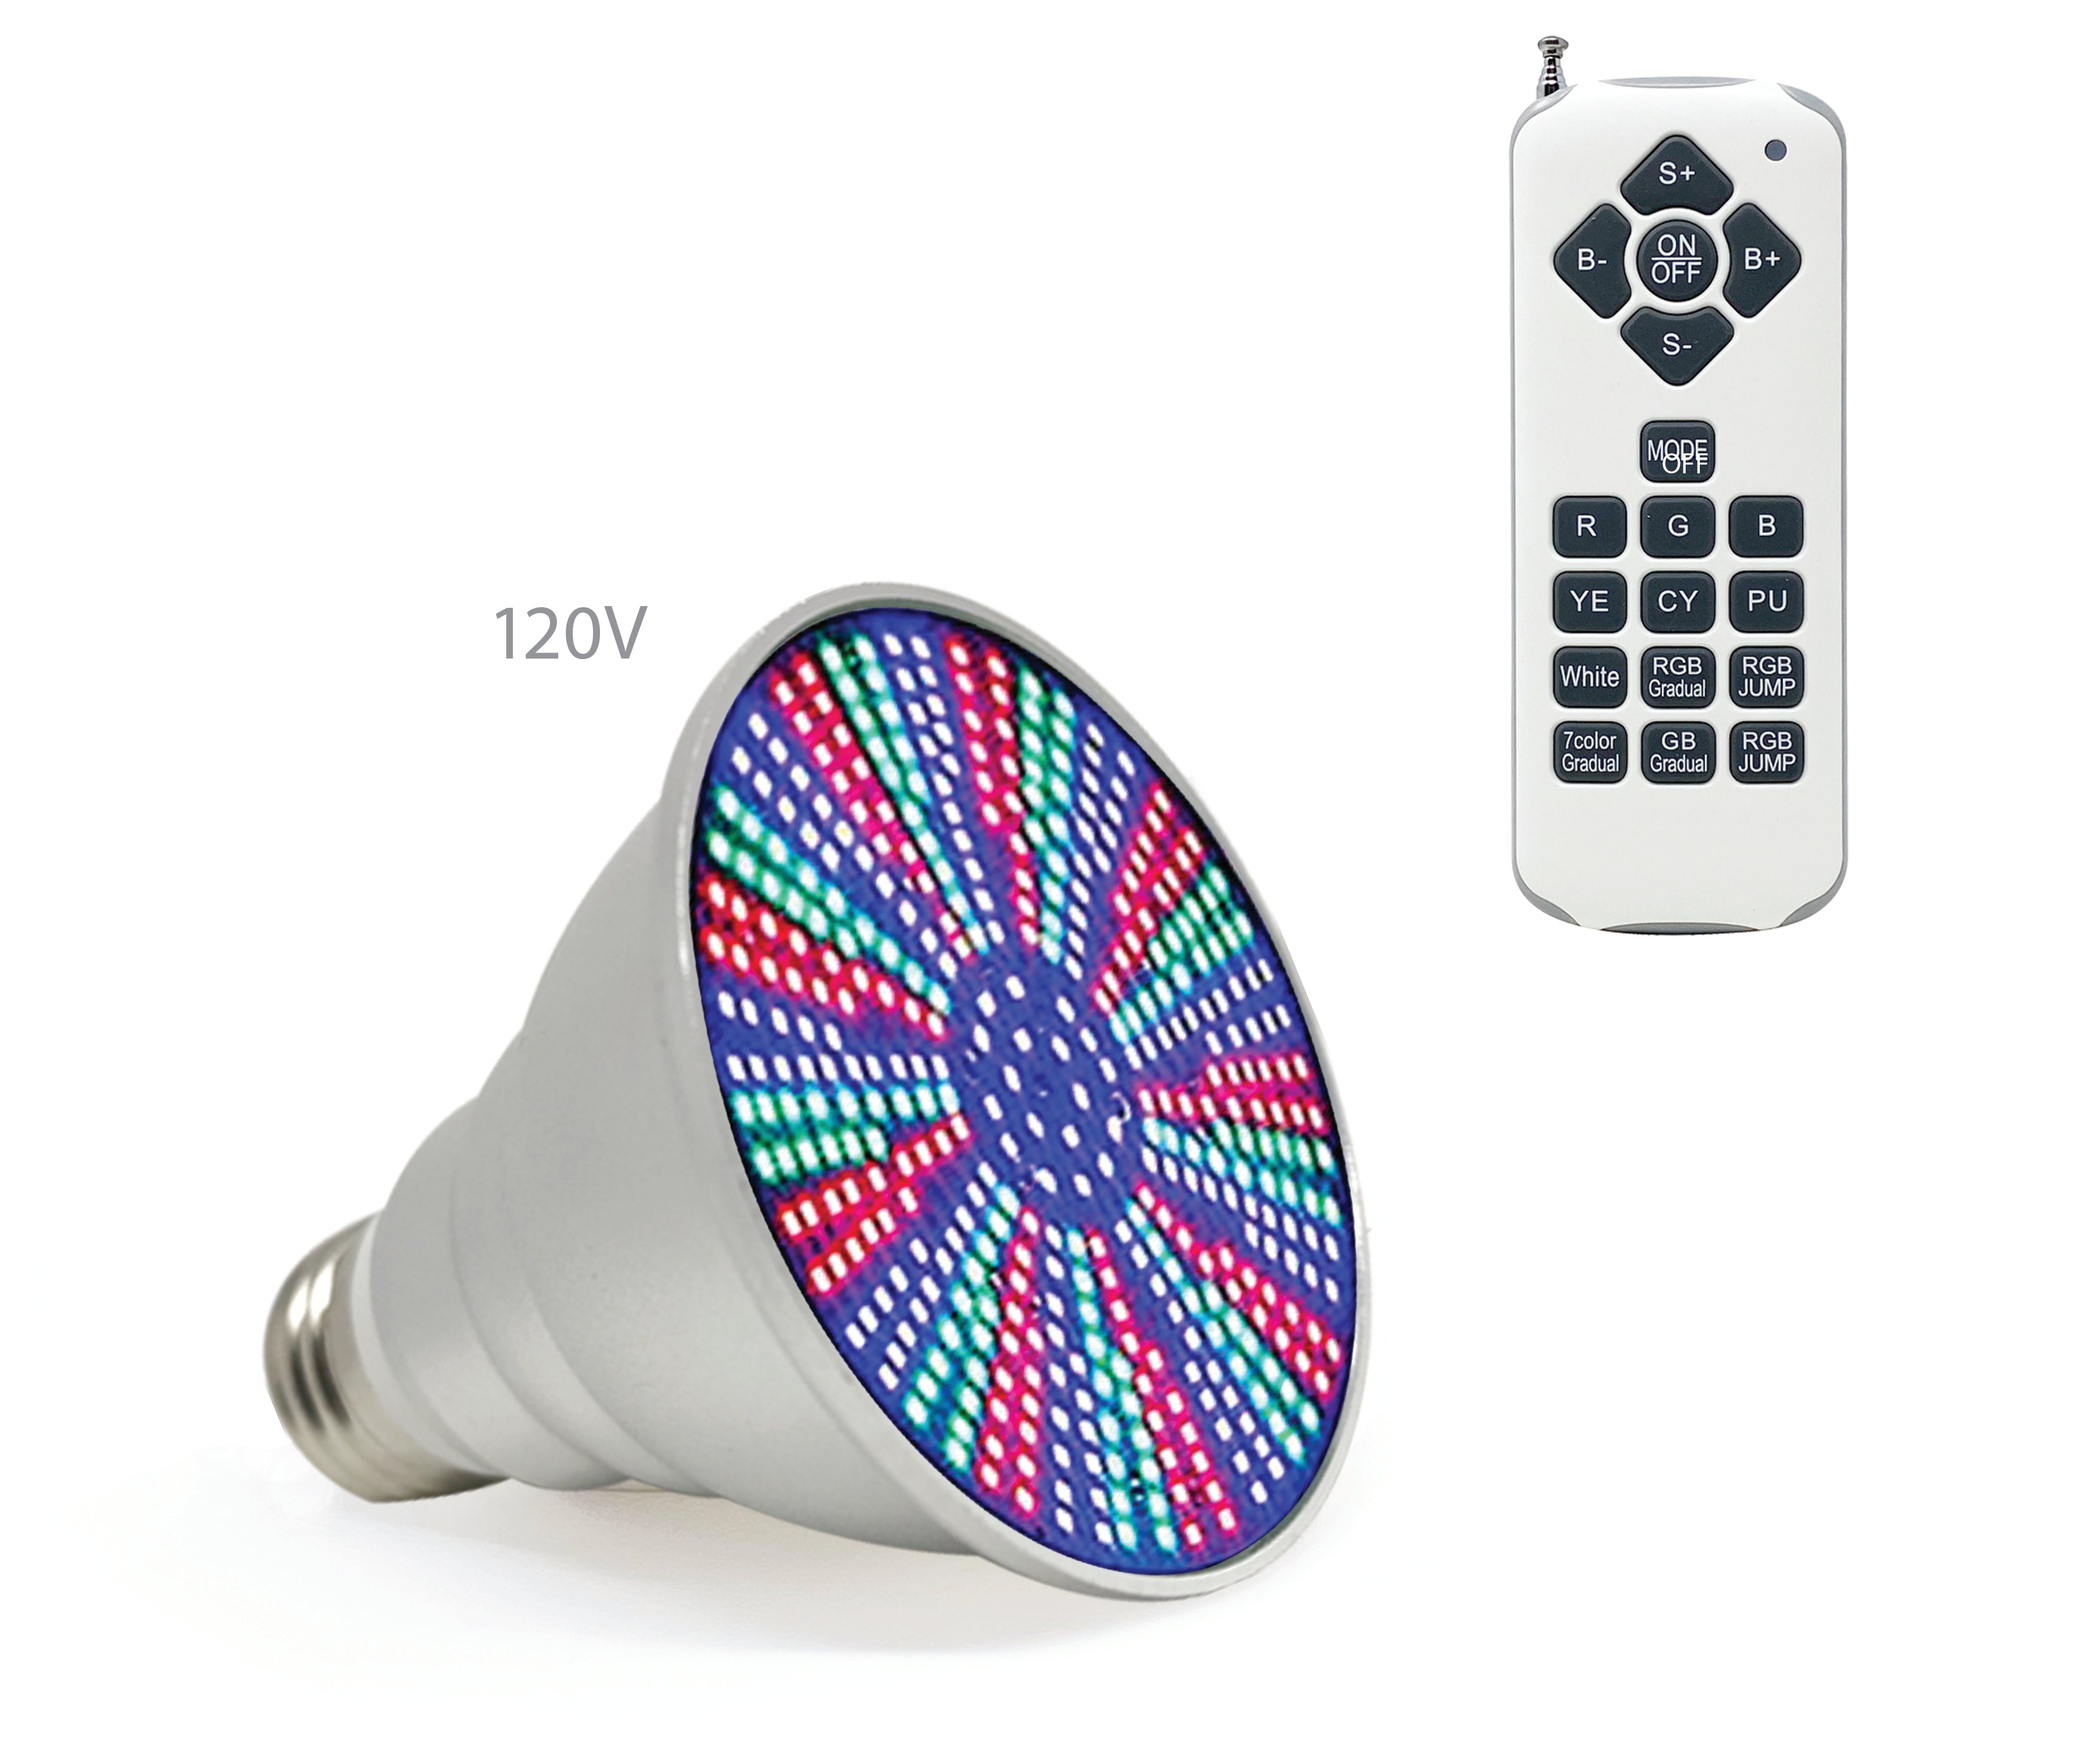 Ampoule LED Life-Bulb pour spa, bain à remous | 120 V 10 W RVB-B | Garantie de remplacement à vie | Ampoule de remplacement pour Pentair, Hayward et autres luminaires